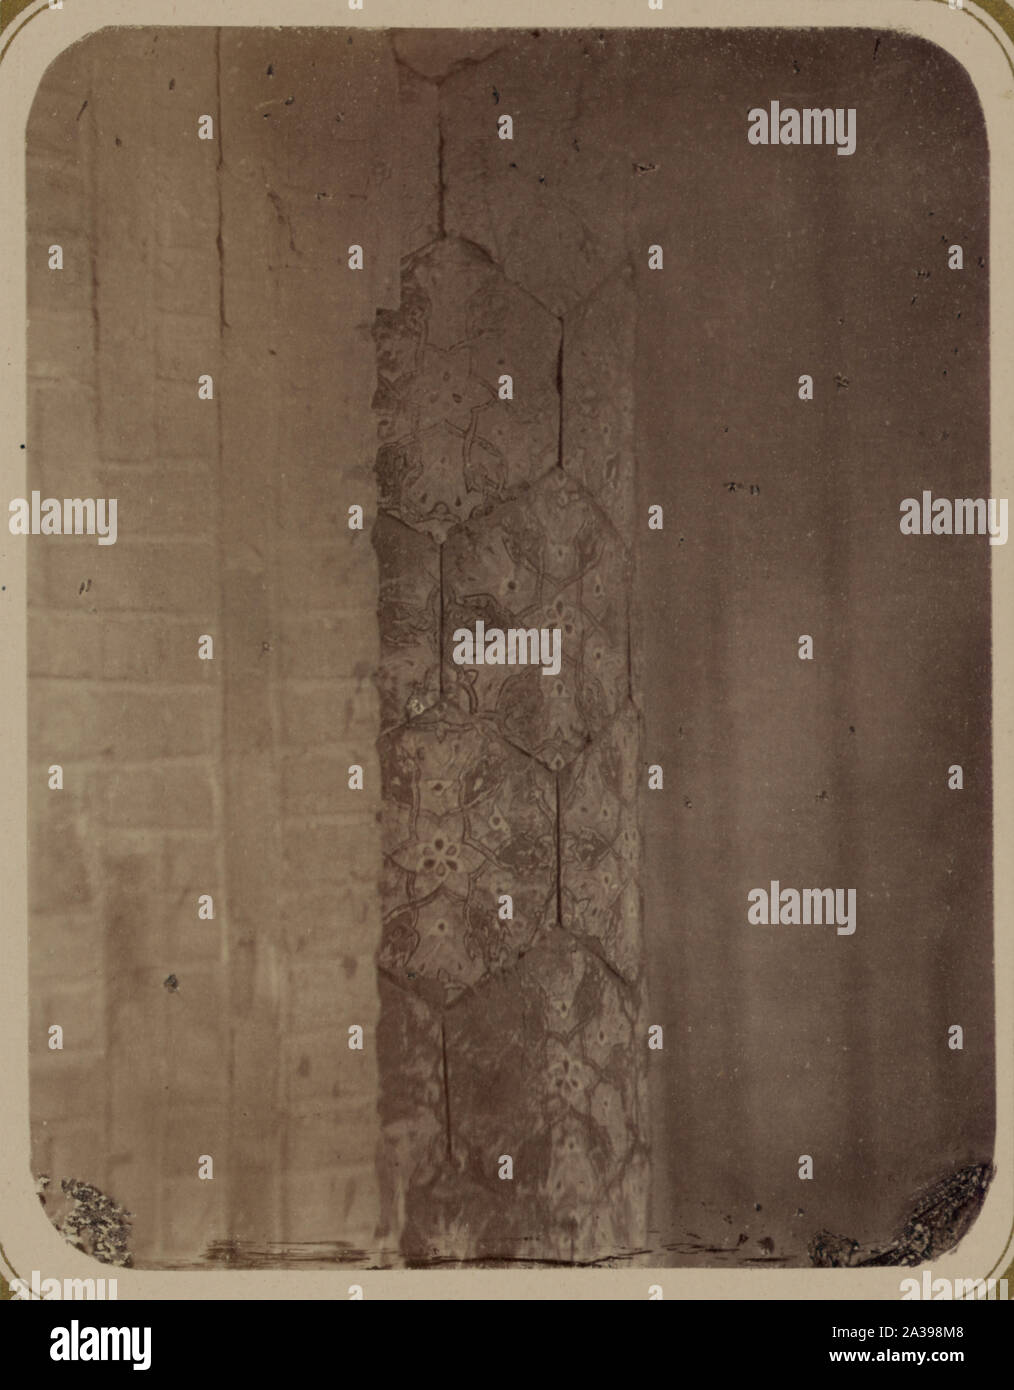 Samarkandskiia drevnosti. Medrese Bibi-Khanym. Chast' kolony [sic] v glavnoi arkie Stock Photo